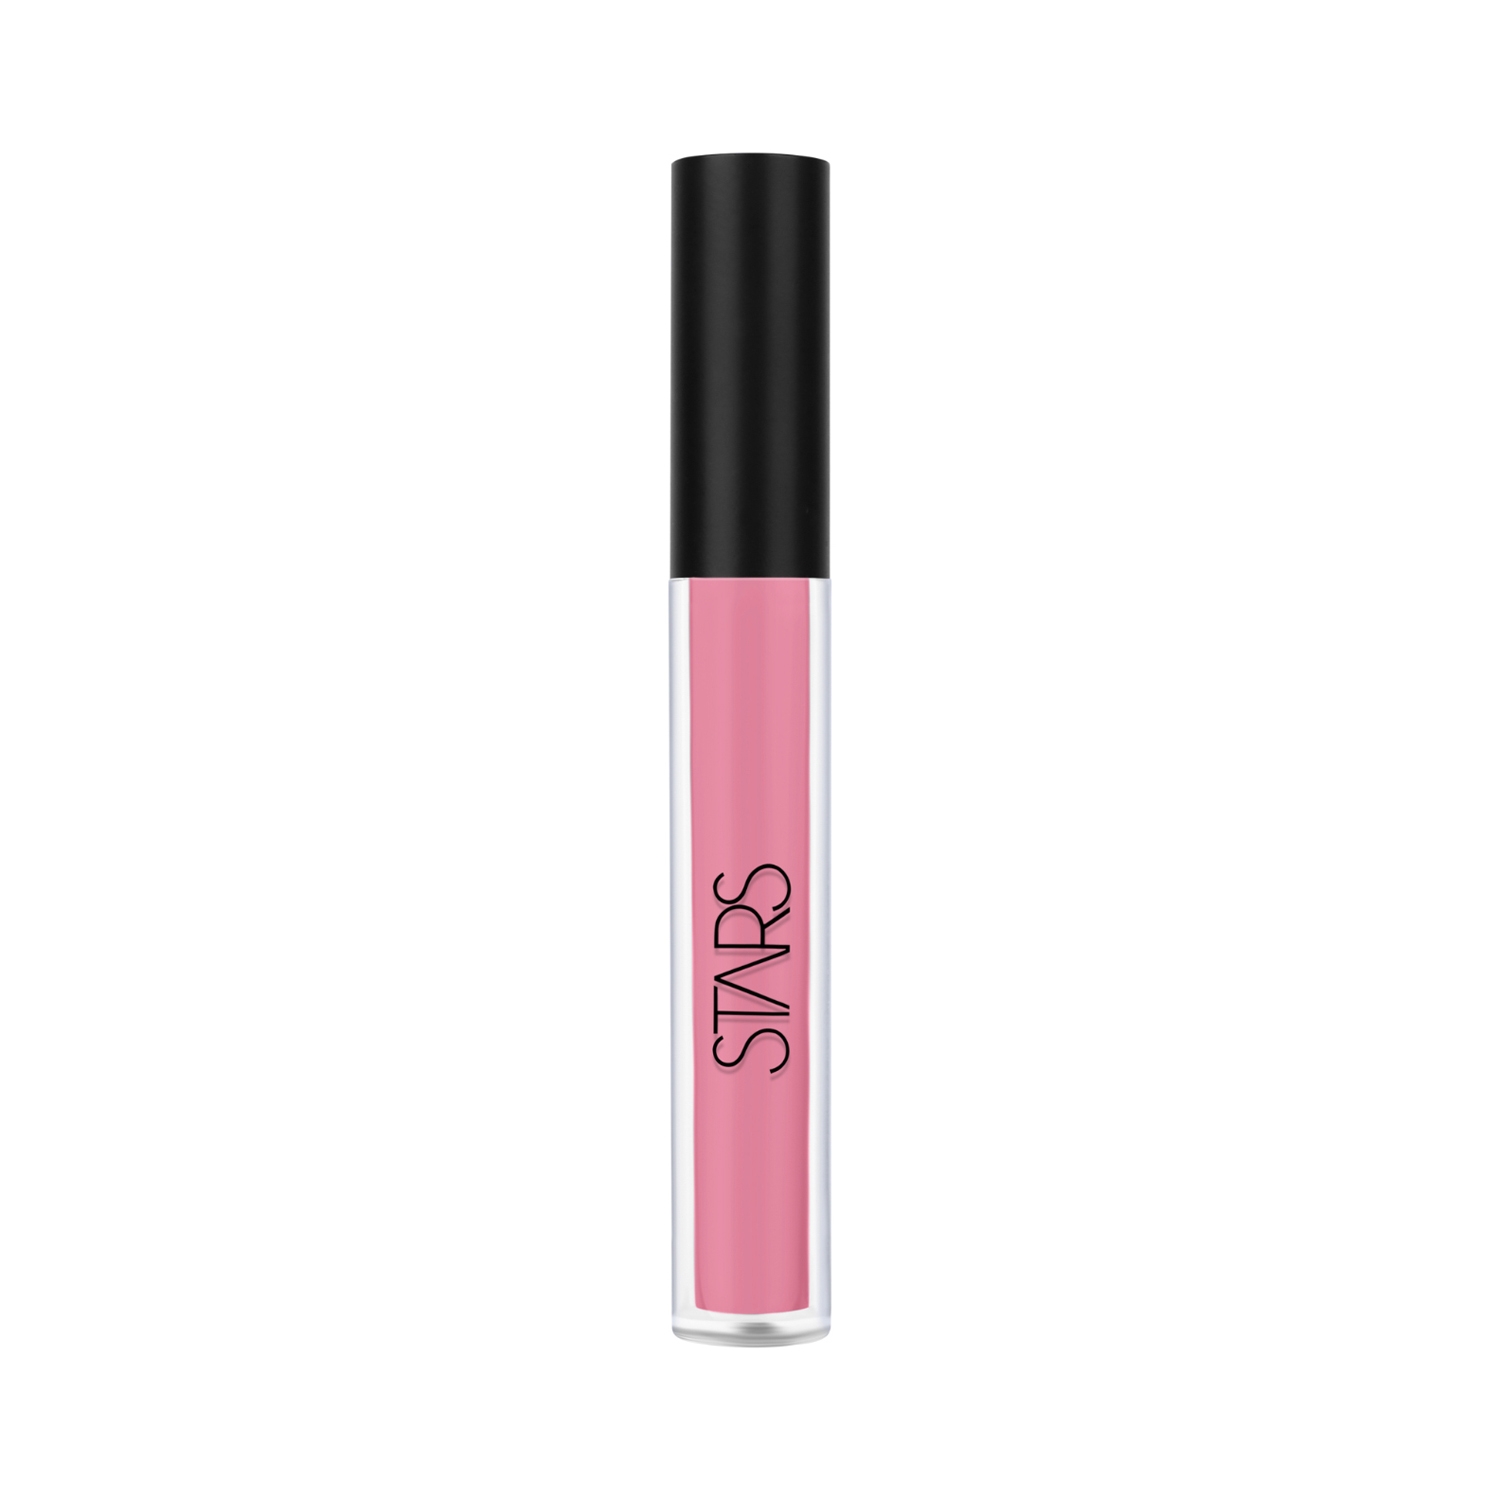 Stars Cosmetics | Stars Cosmetics Lip Pop Matte Finish Liquid Lipstick - 03 Nude Blush (2.6ml)